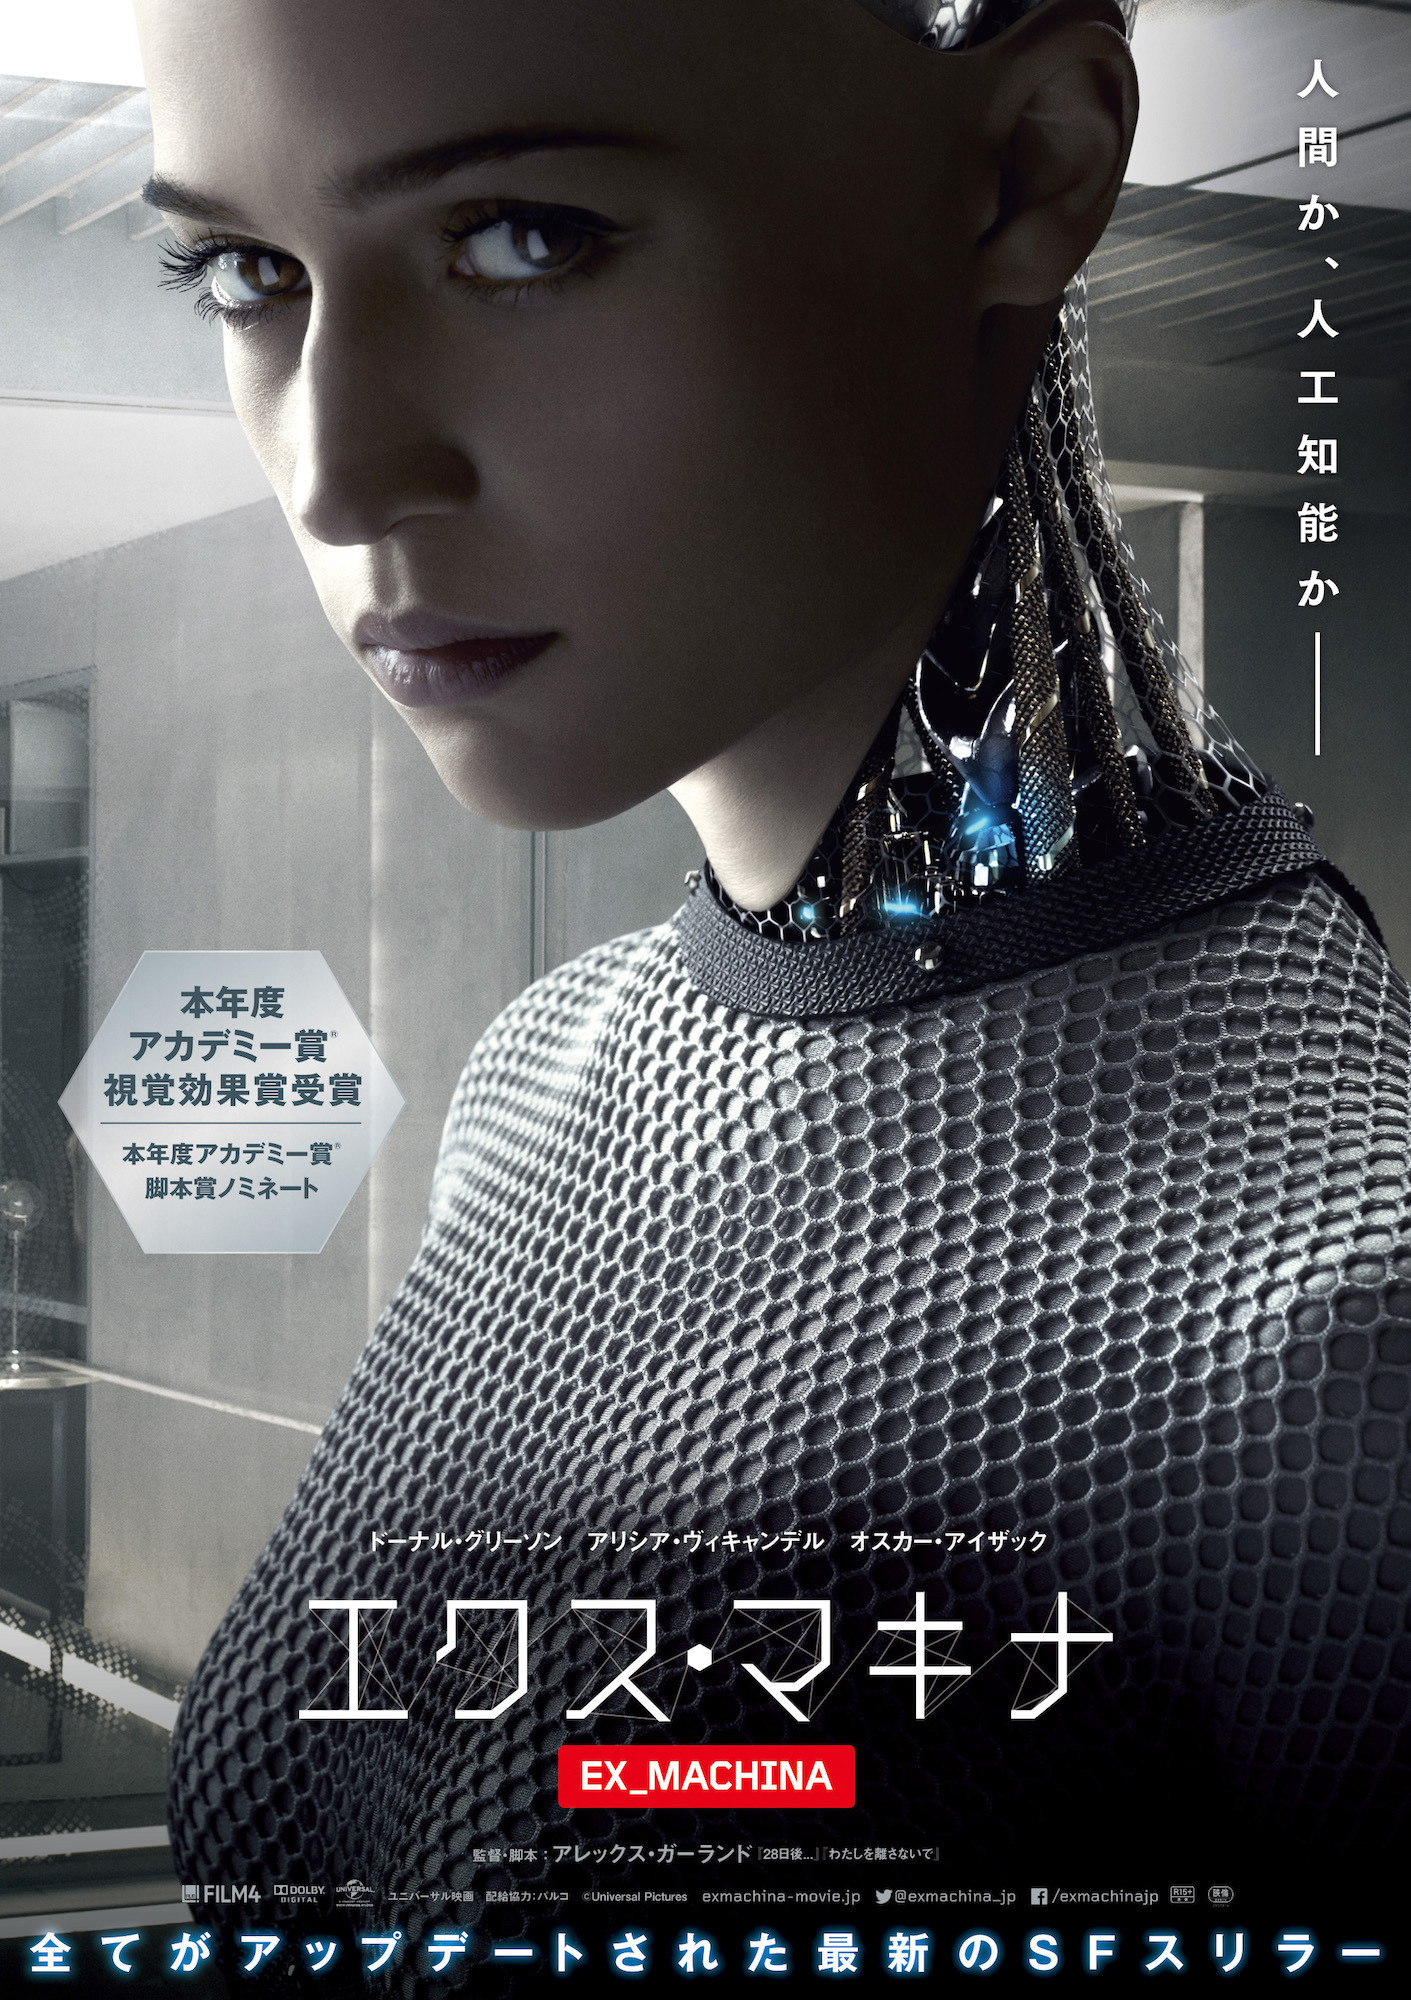 アリシア・ヴィキャンデル、まるで人間!? ロボット姿のビジュアル到着『エクス・マキナ』 | cinemacafe.net